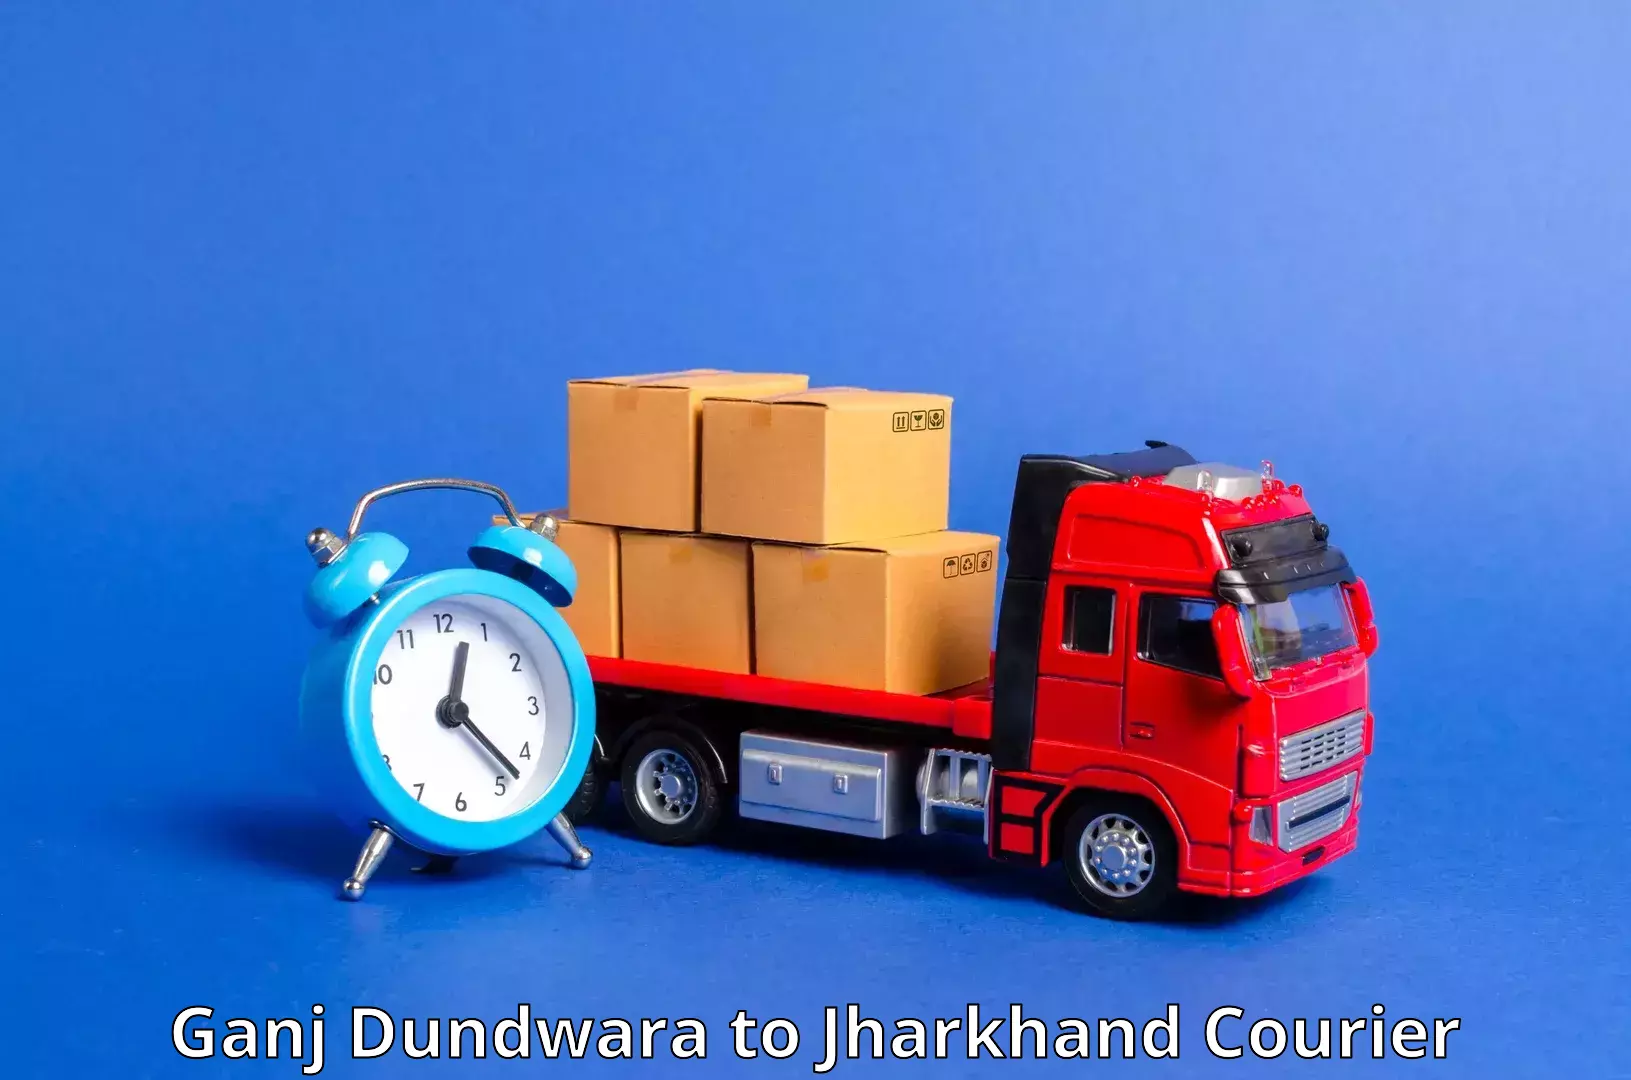 Rapid shipping services in Ganj Dundwara to Bokaro Steel City